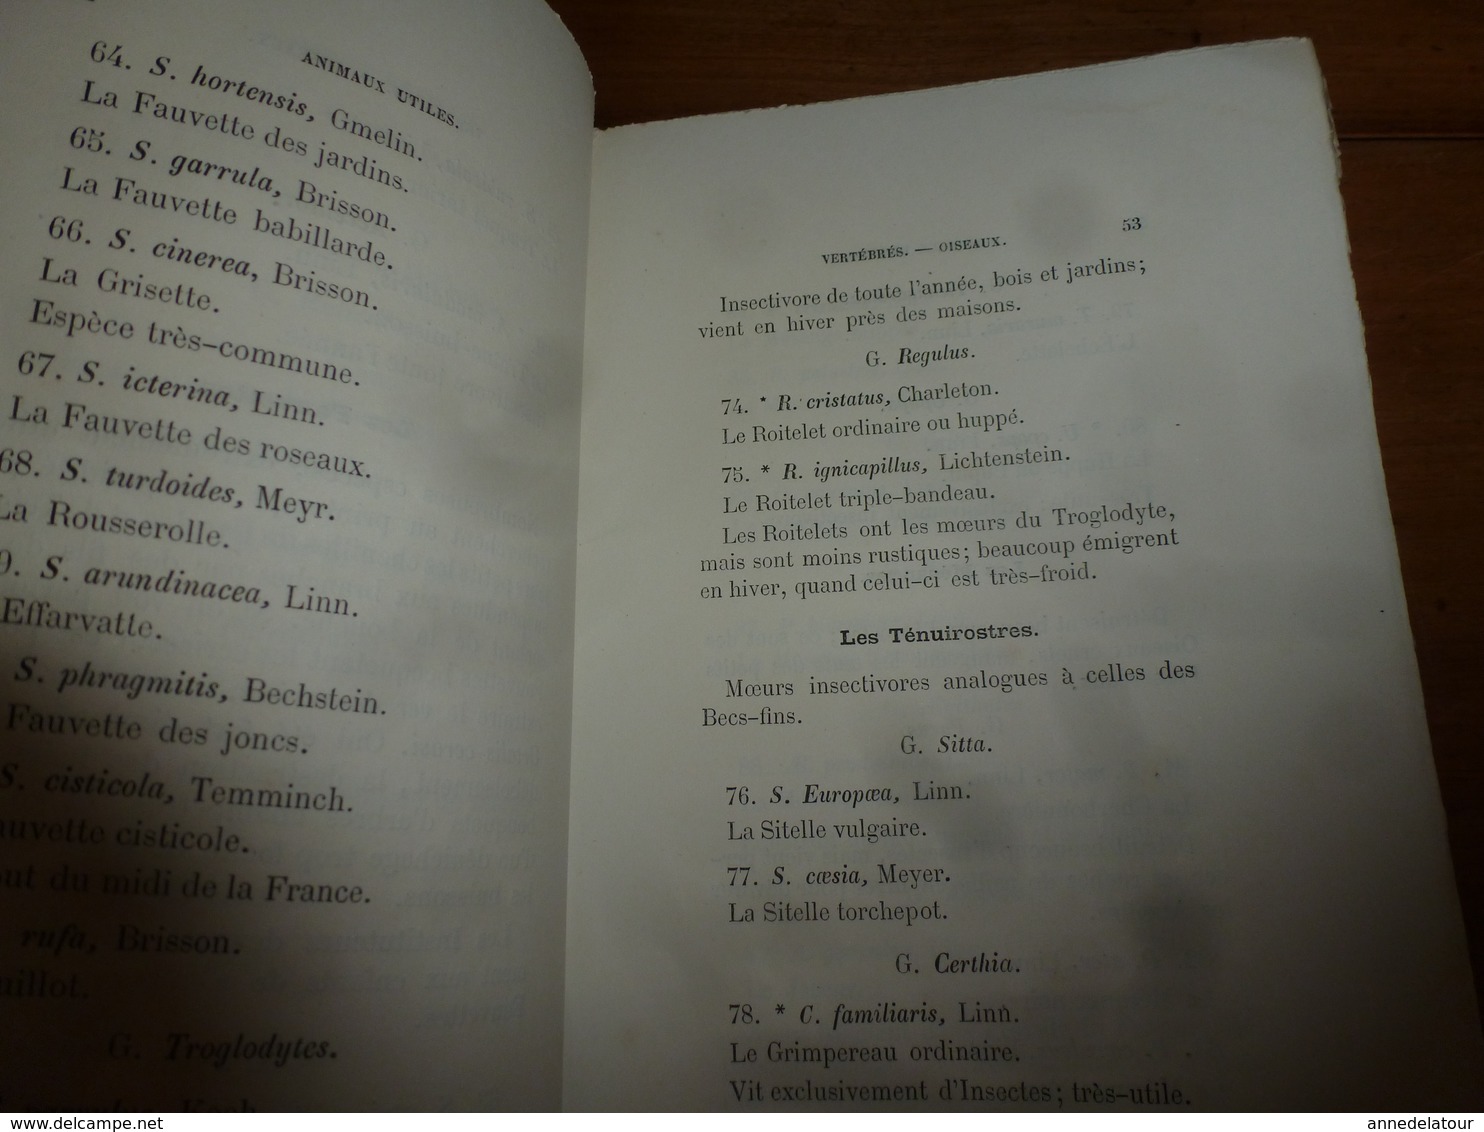 1878 Catalogue raisonné des ANIMAUX UTILES - par Maurice Girard docteur ès Sciences Naturelles